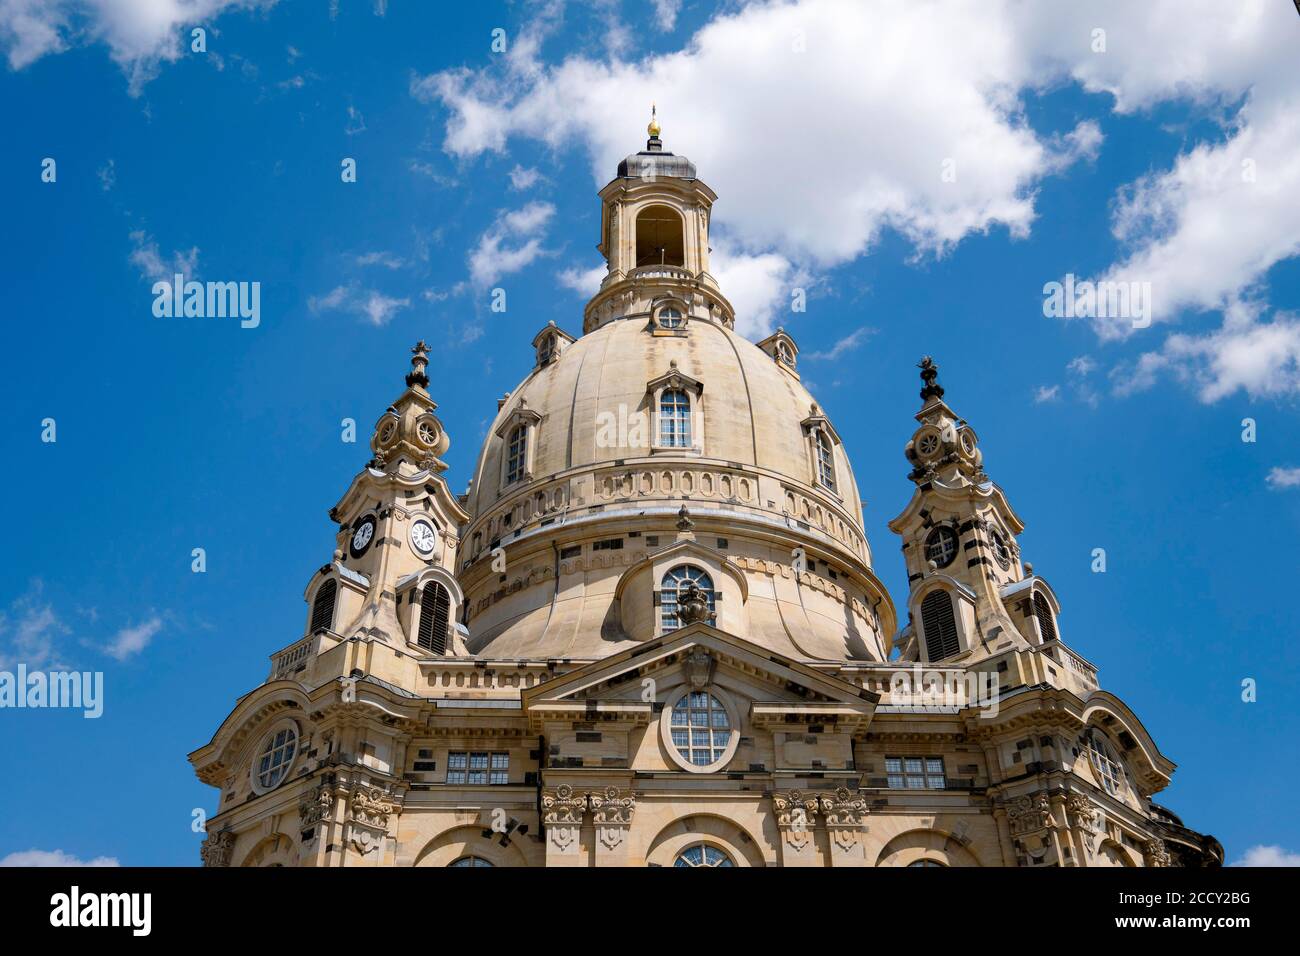 Cuppola der Frauenkirche Unserer Lieben Frau, Dresden, Sachsen, Deutschland Stockfoto